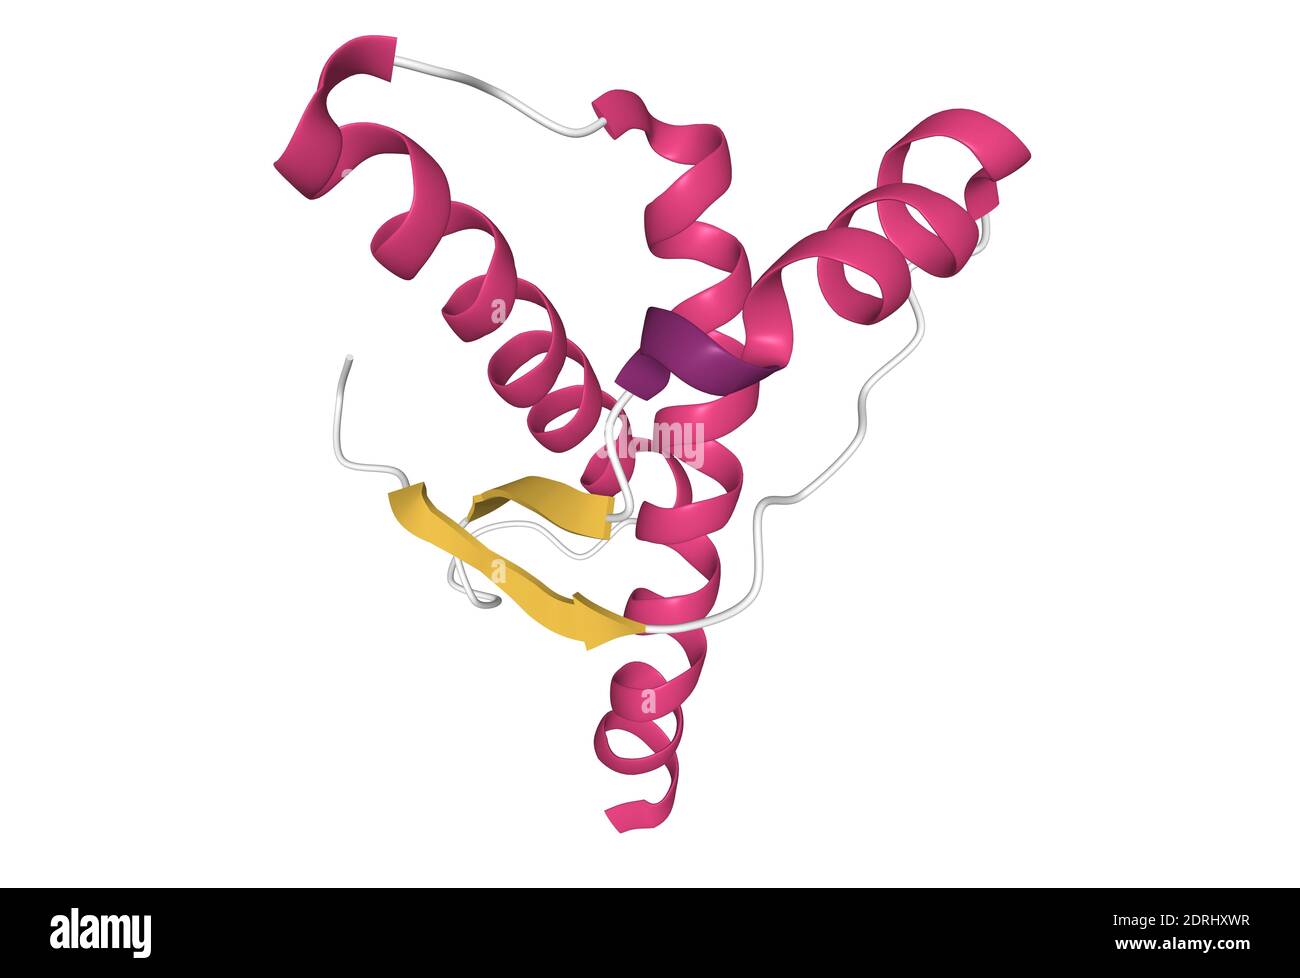 Struktur der menschlichen Prion, 3D-Cartoon-Modell isoliert, weißer Hintergrund Stockfoto